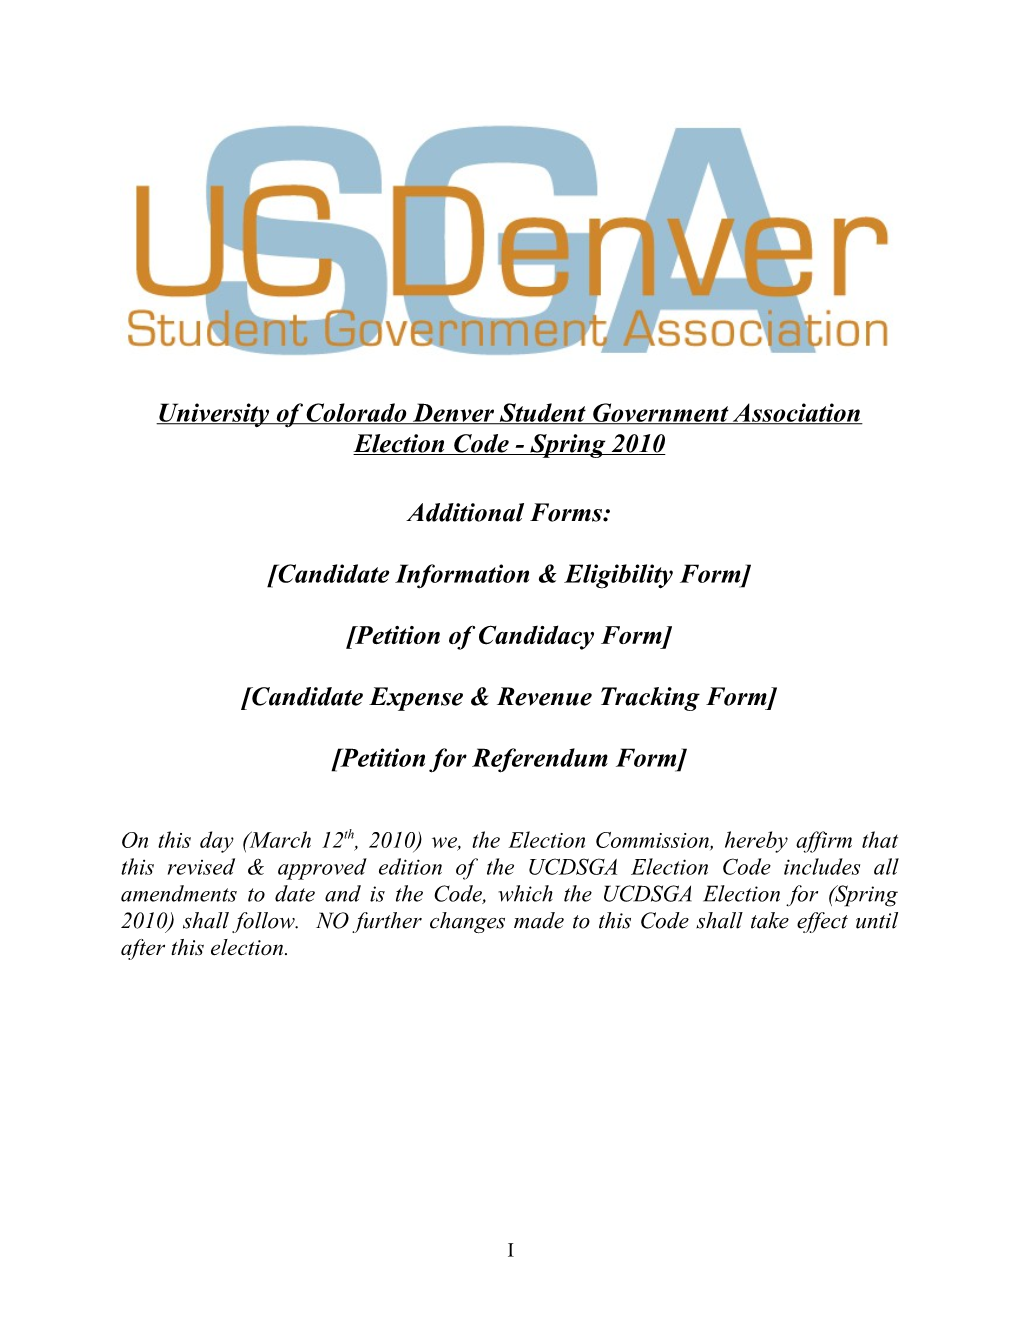 2010 Election Code - University of Colorado Denver Student Government Association